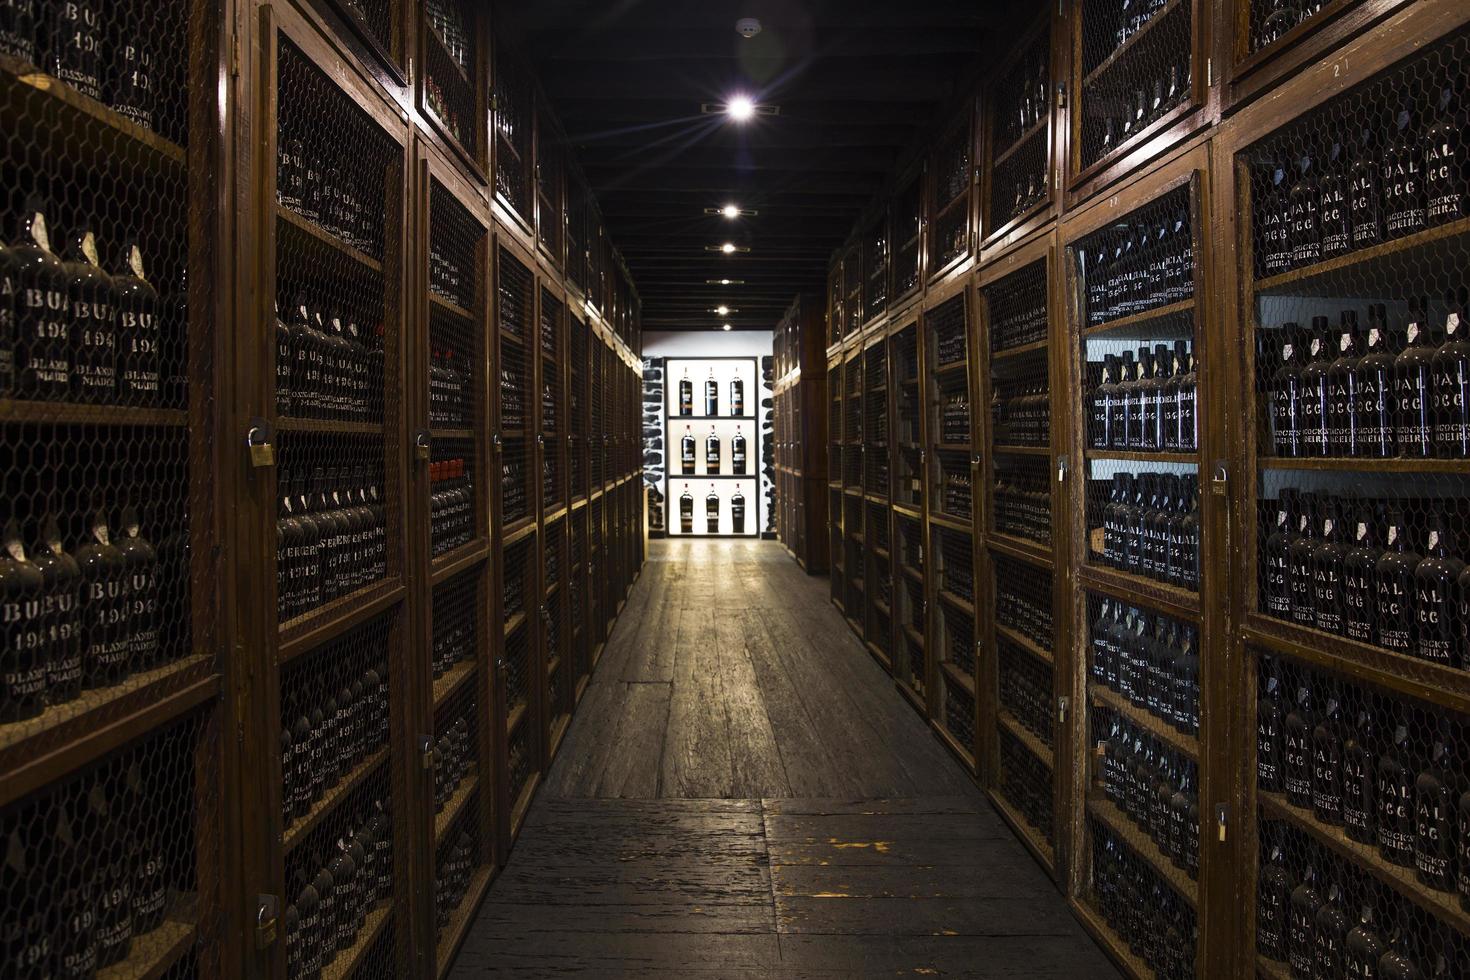 madeira, portugal, 2020 - detalhe do armazenamento do vinho blandy do vinho madeira vintage em portugal. é uma vinícola familiar fundada por john blandy em 1811. foto